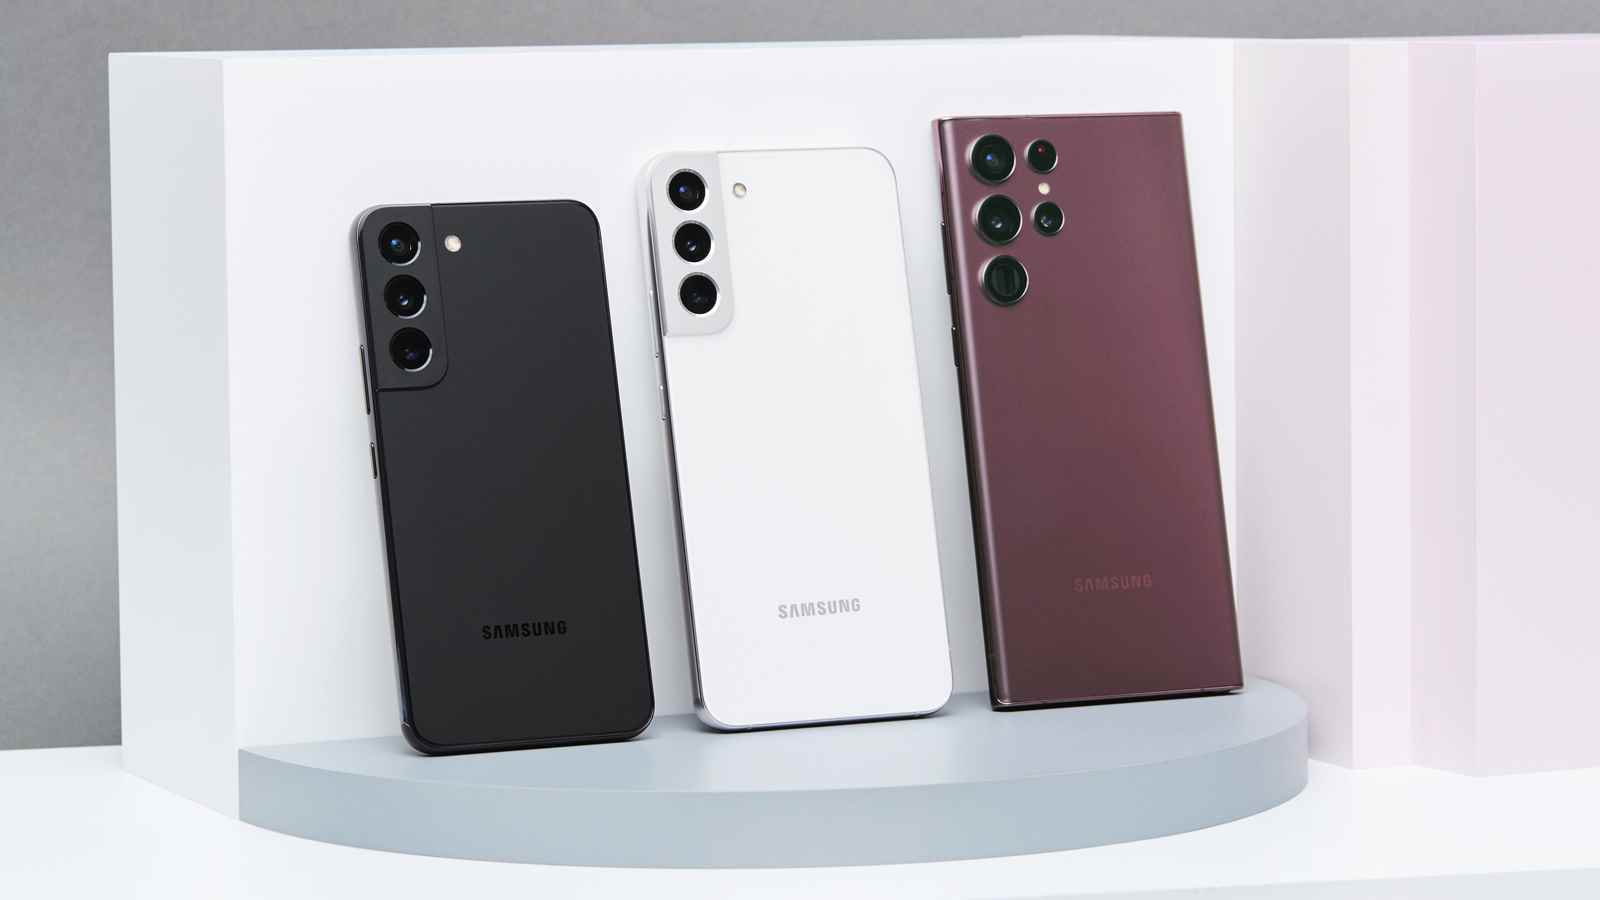 Gösterilen telefonların arkasıyla desteklenen Samsung Galaxy S22 ailesi